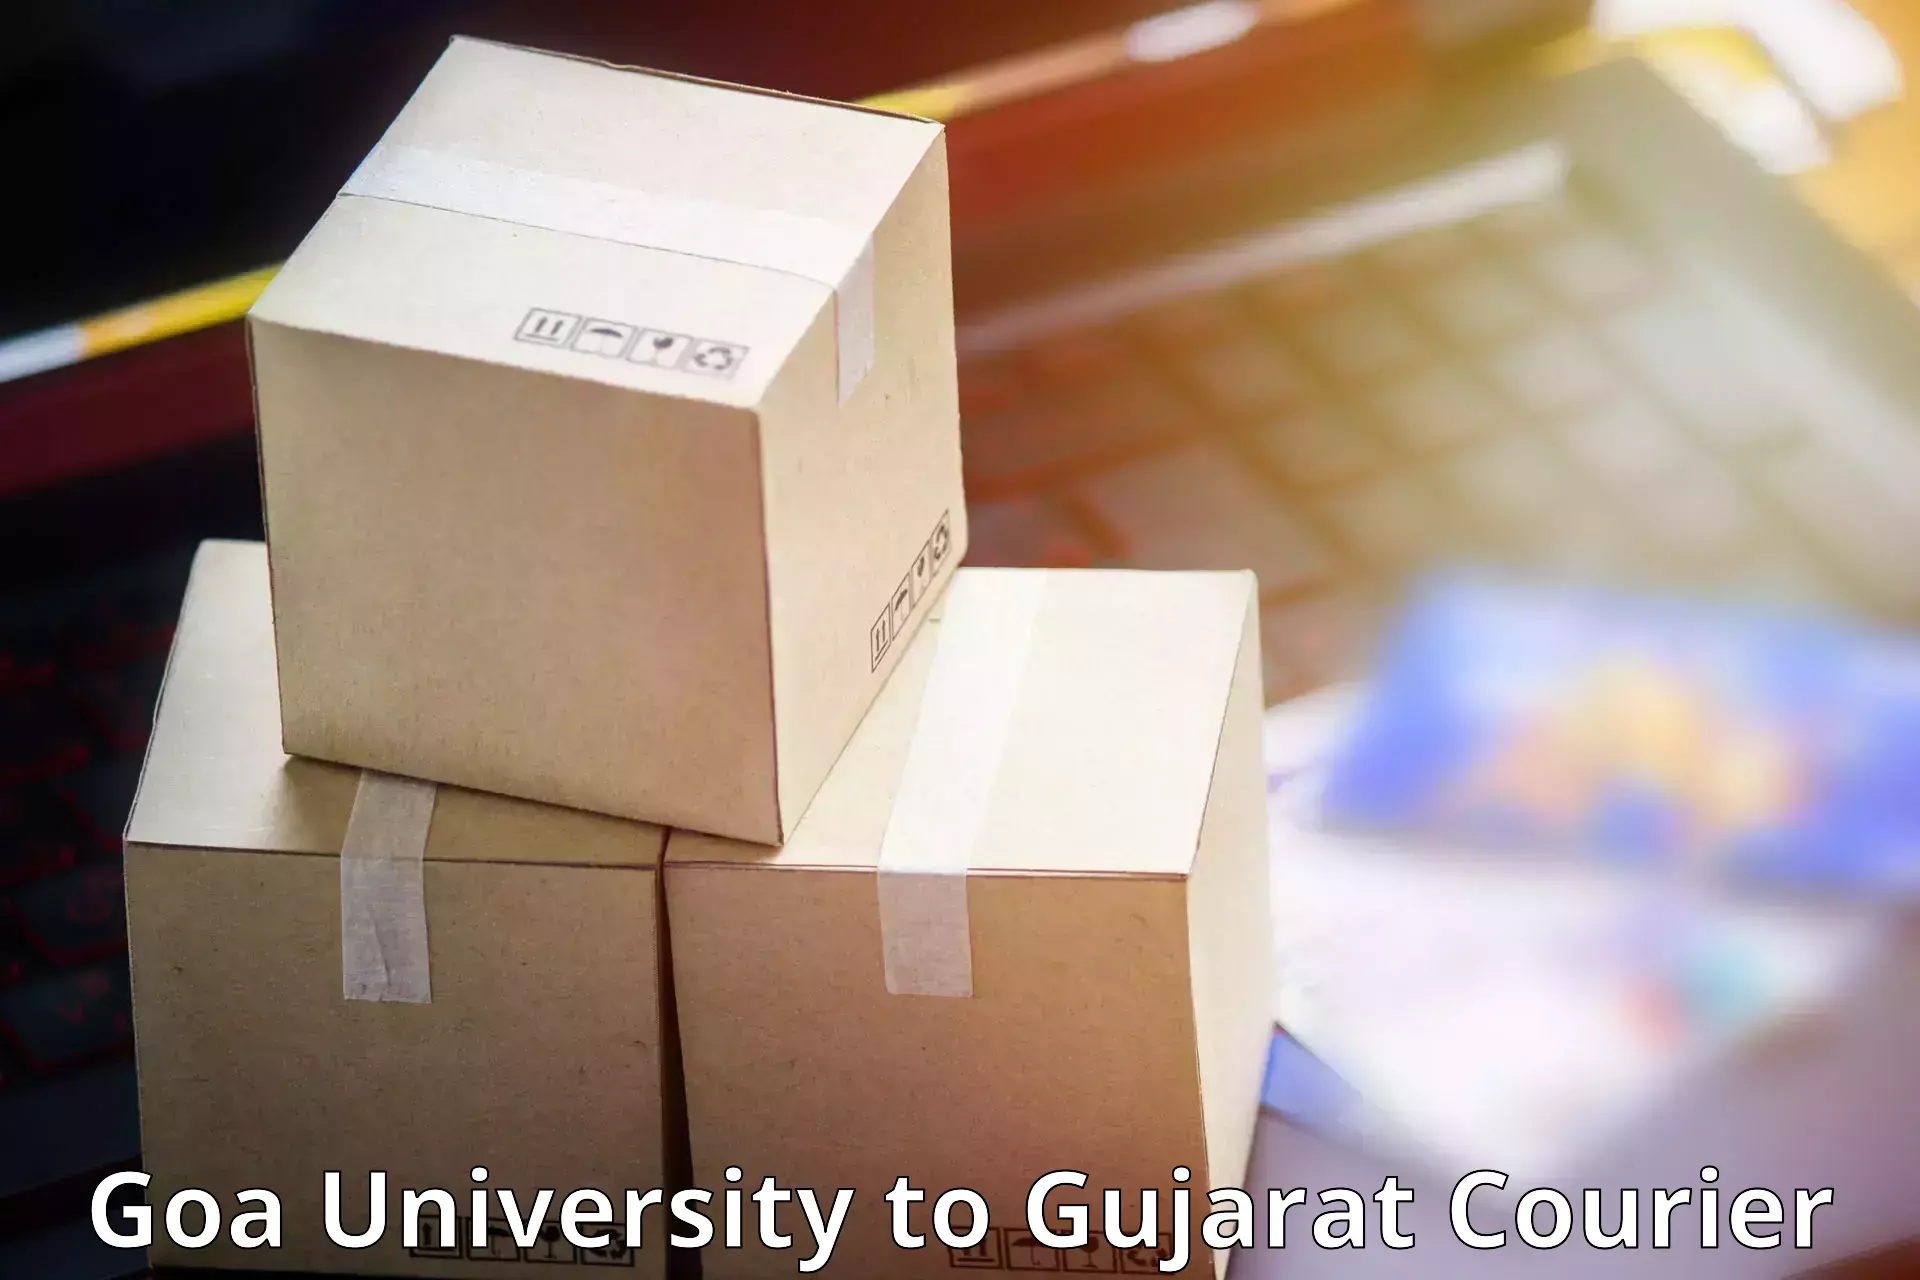 Large package courier Goa University to Kosamba